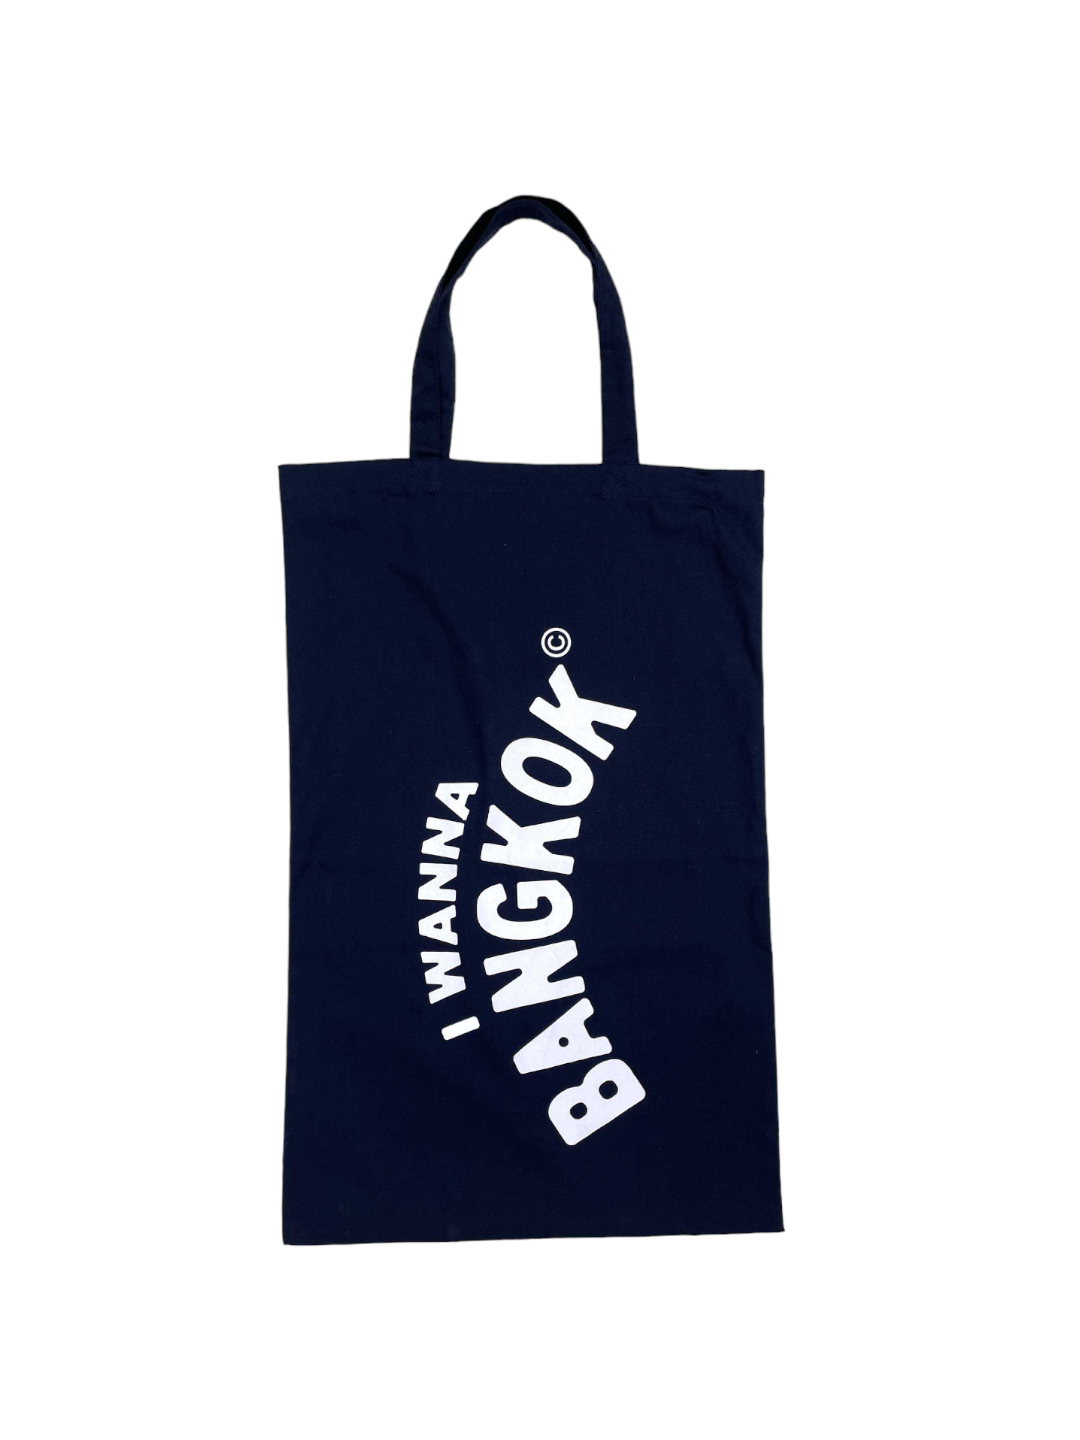 Kangaroo Bag (Navy)